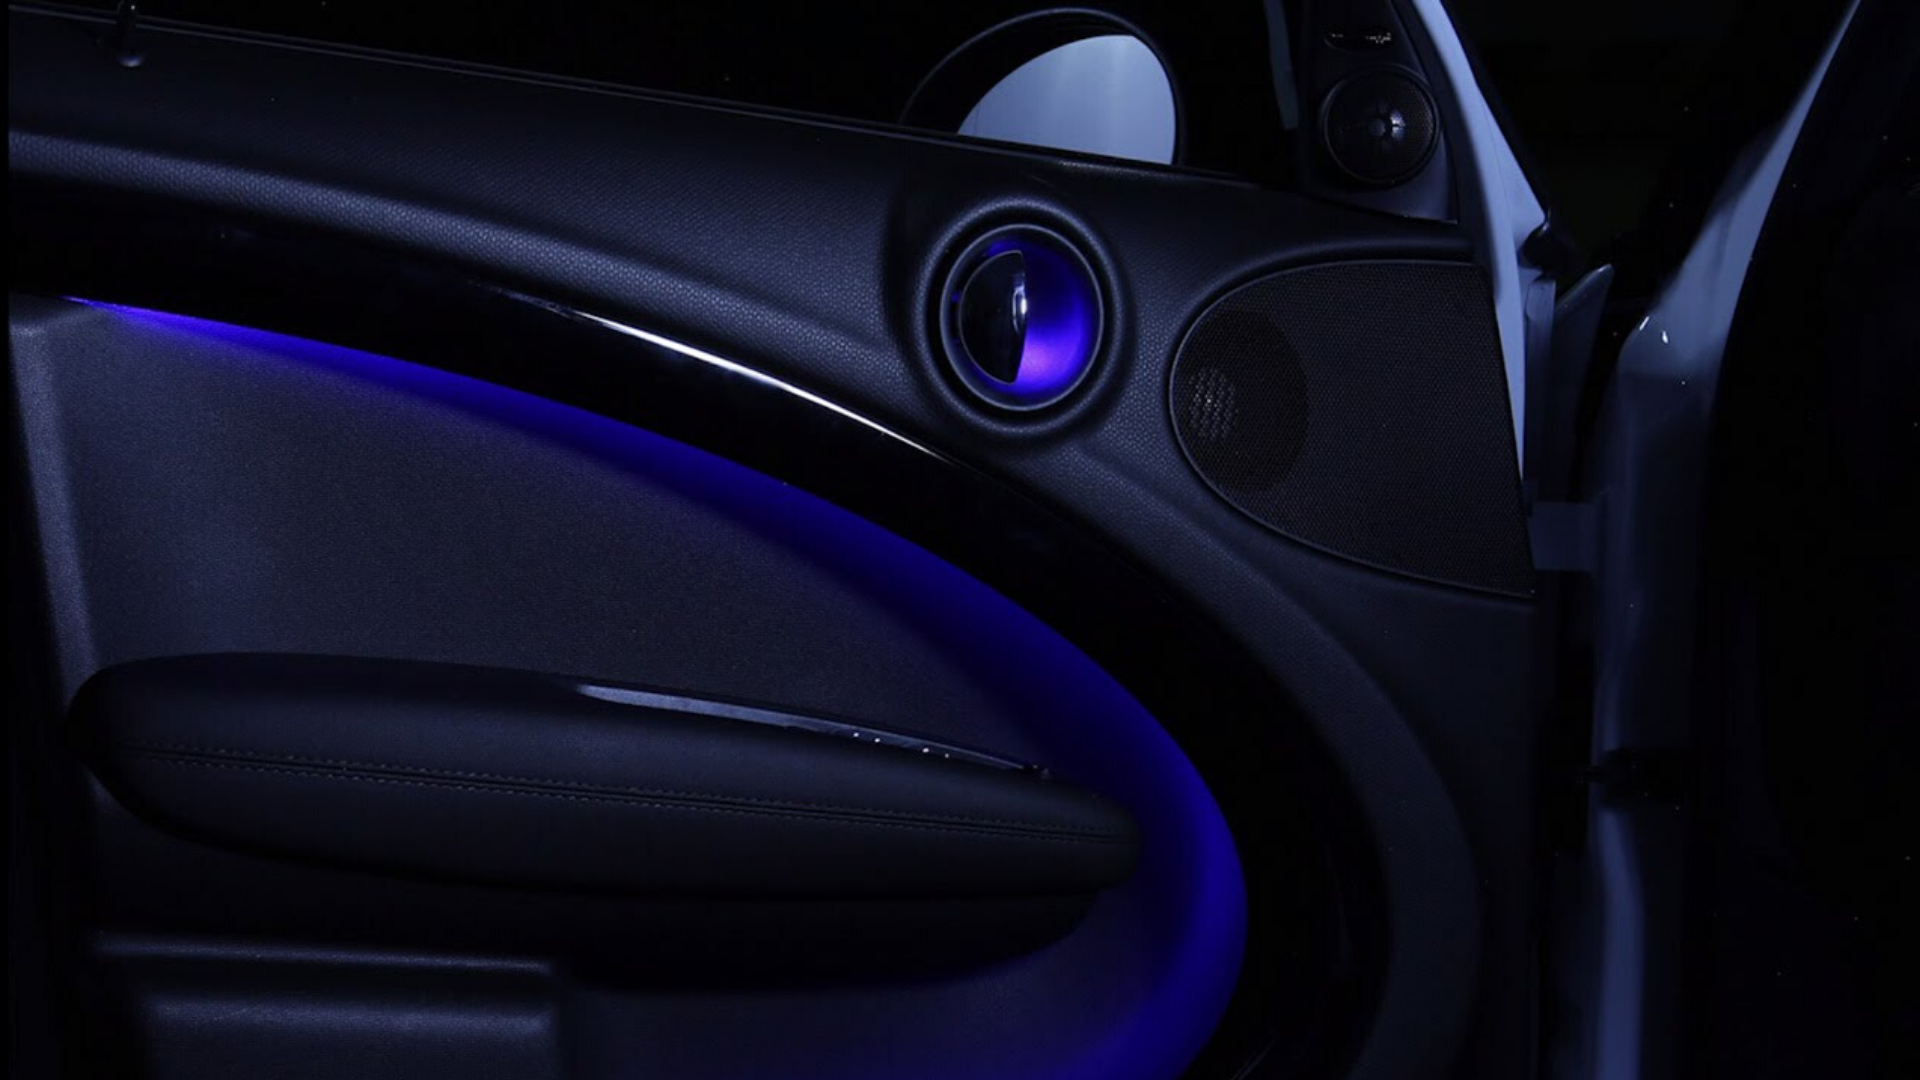 Klicken Sie hier, um zu erfahren, wie das Ambientelicht von SCHOTT eine tolle Stimmung im Auto erzeugt.